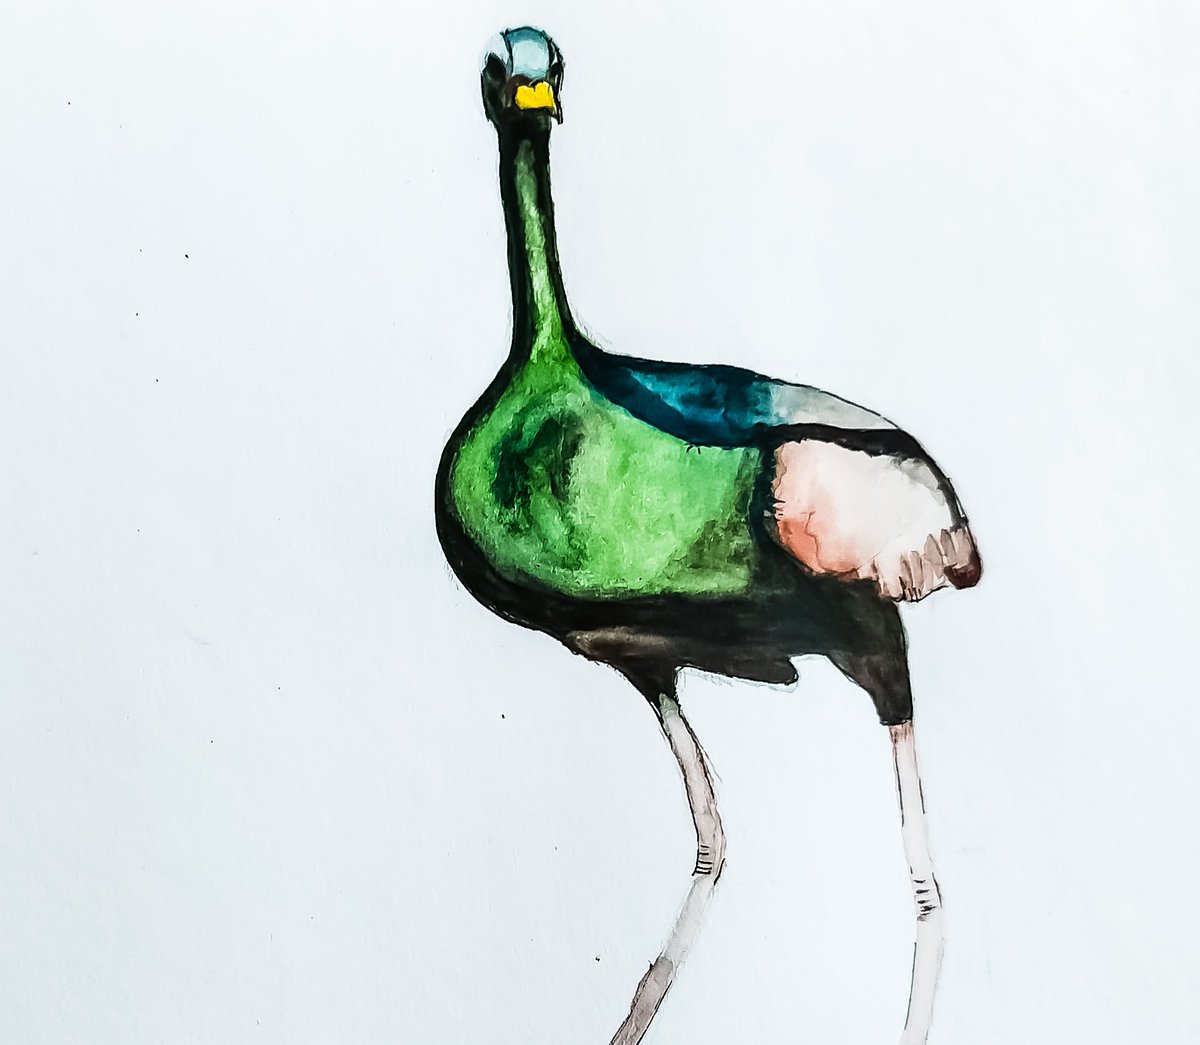 A failed attempt🙁
#birds  #watercolorpainting #birdstudy #art #BirdsOfTwitter